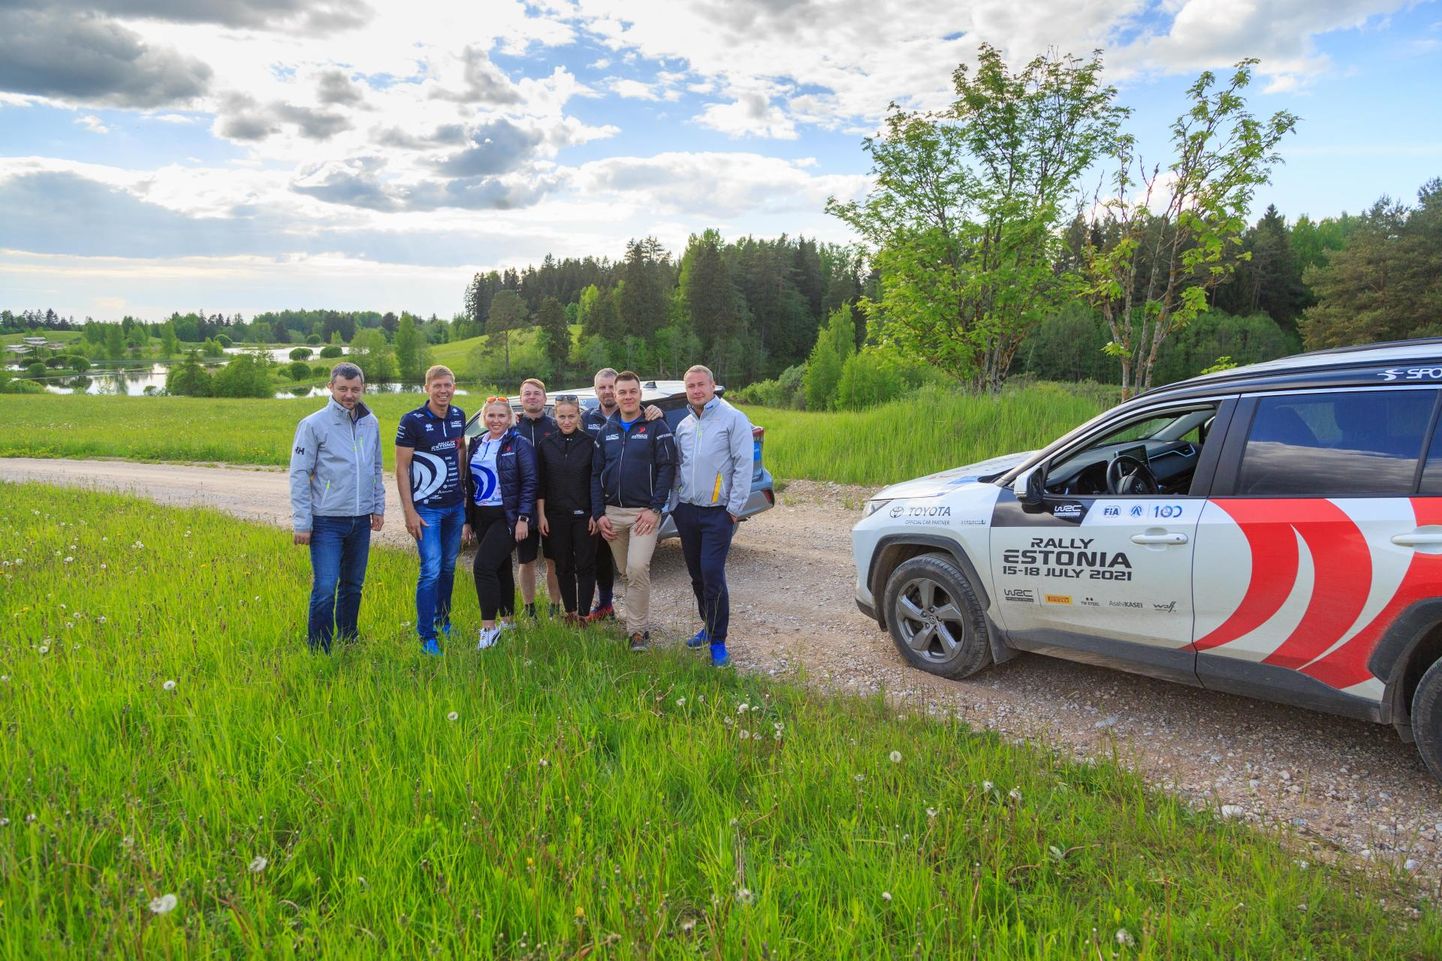 Rally Estonia korraldusmeeskond sõitis hiljuti läbi kiiruskatsete radasid.